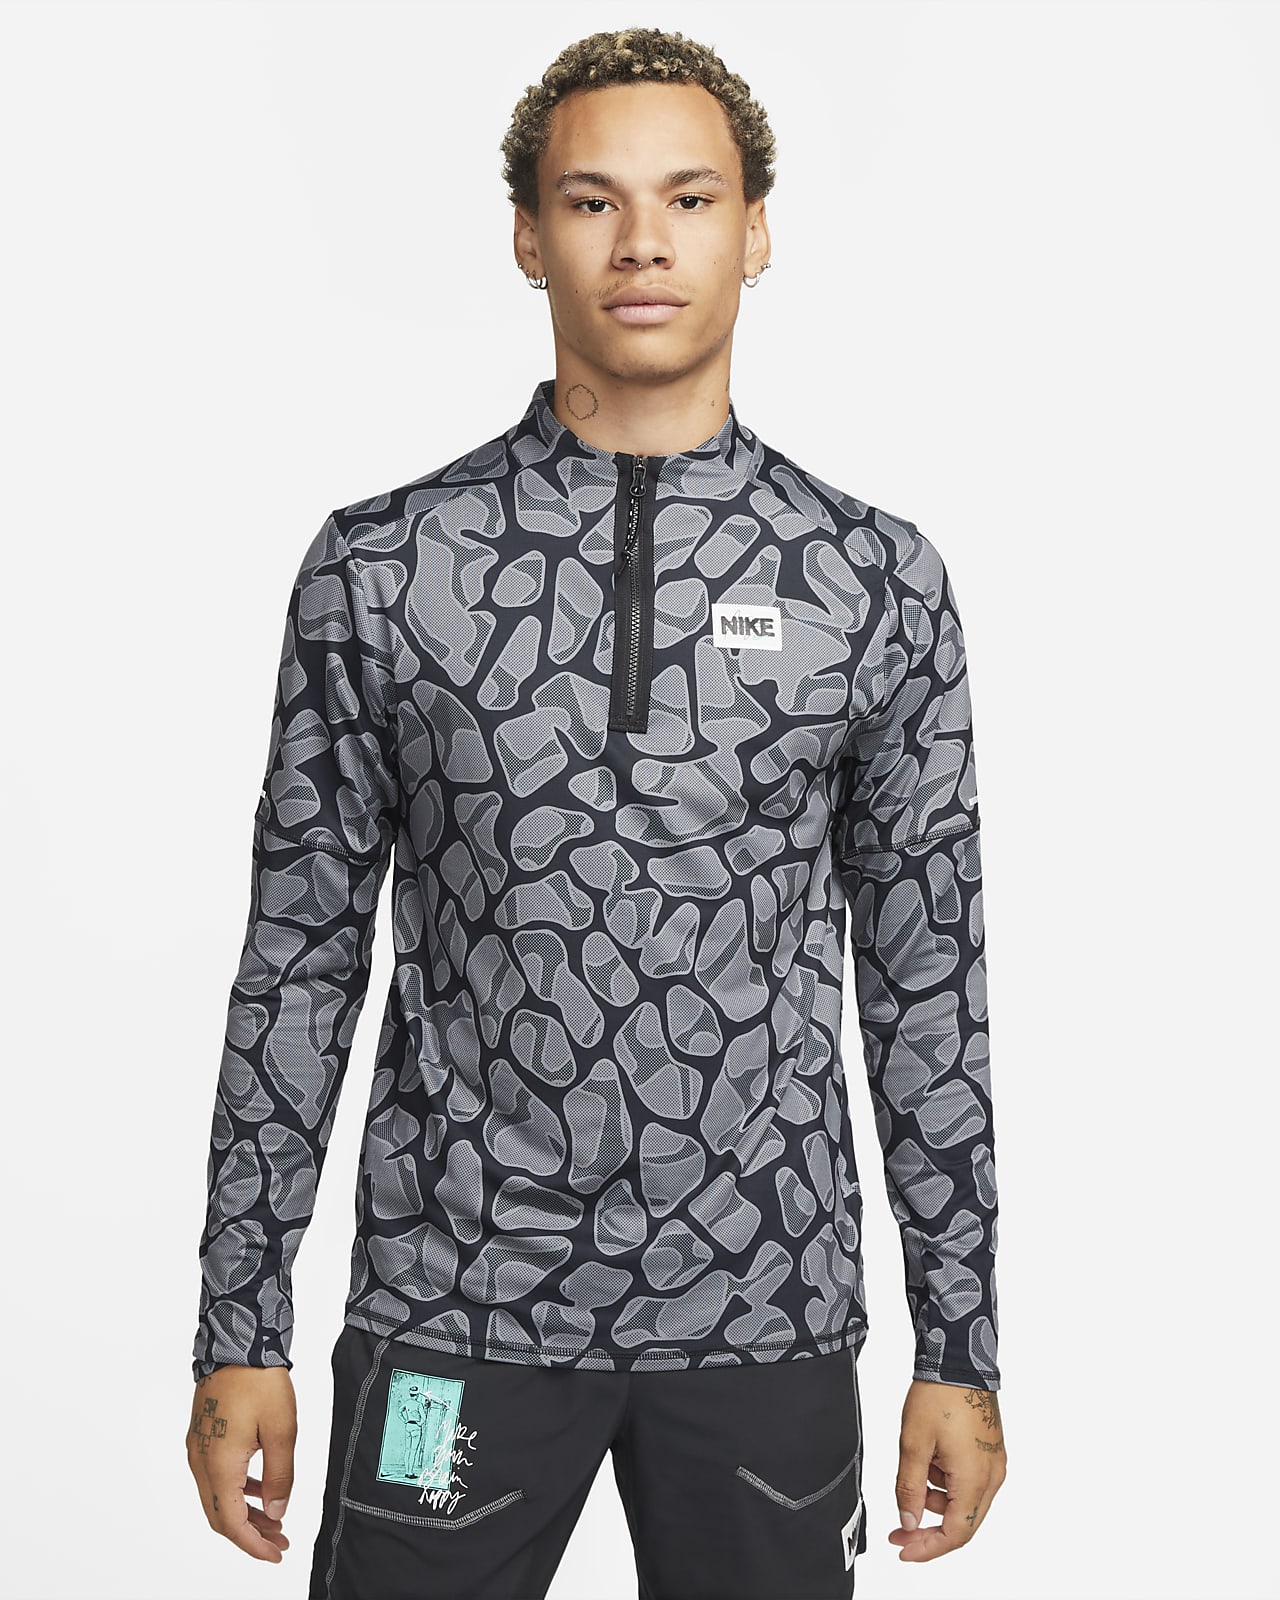 Ανδρική μπλούζα για τρέξιμο με φερμουάρ στο μισό μήκος Nike Dri-FIT D.Y.E.